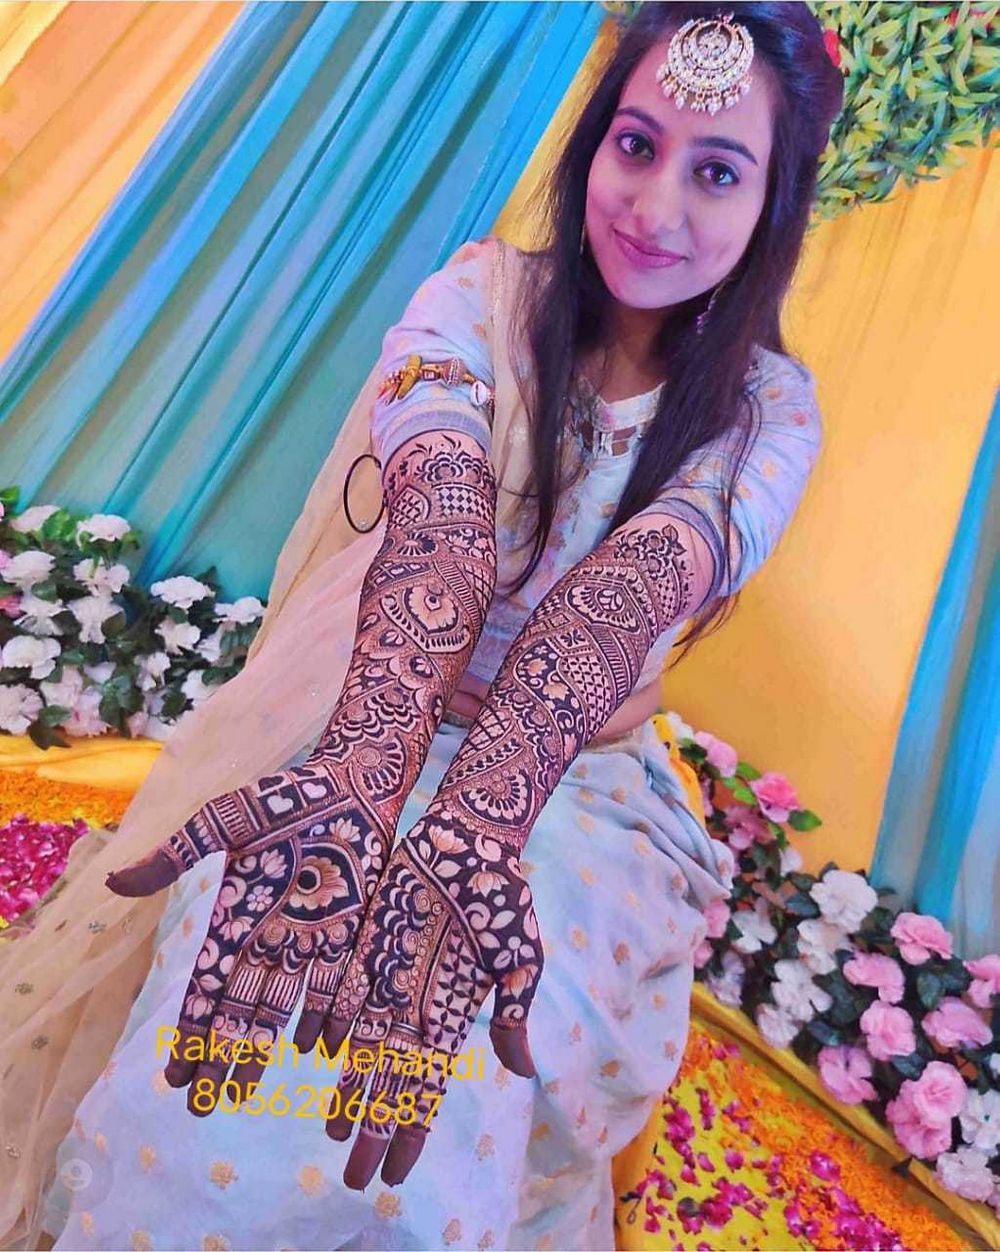 Photo From New Bridal Design - By Rakesh Mehandi Art